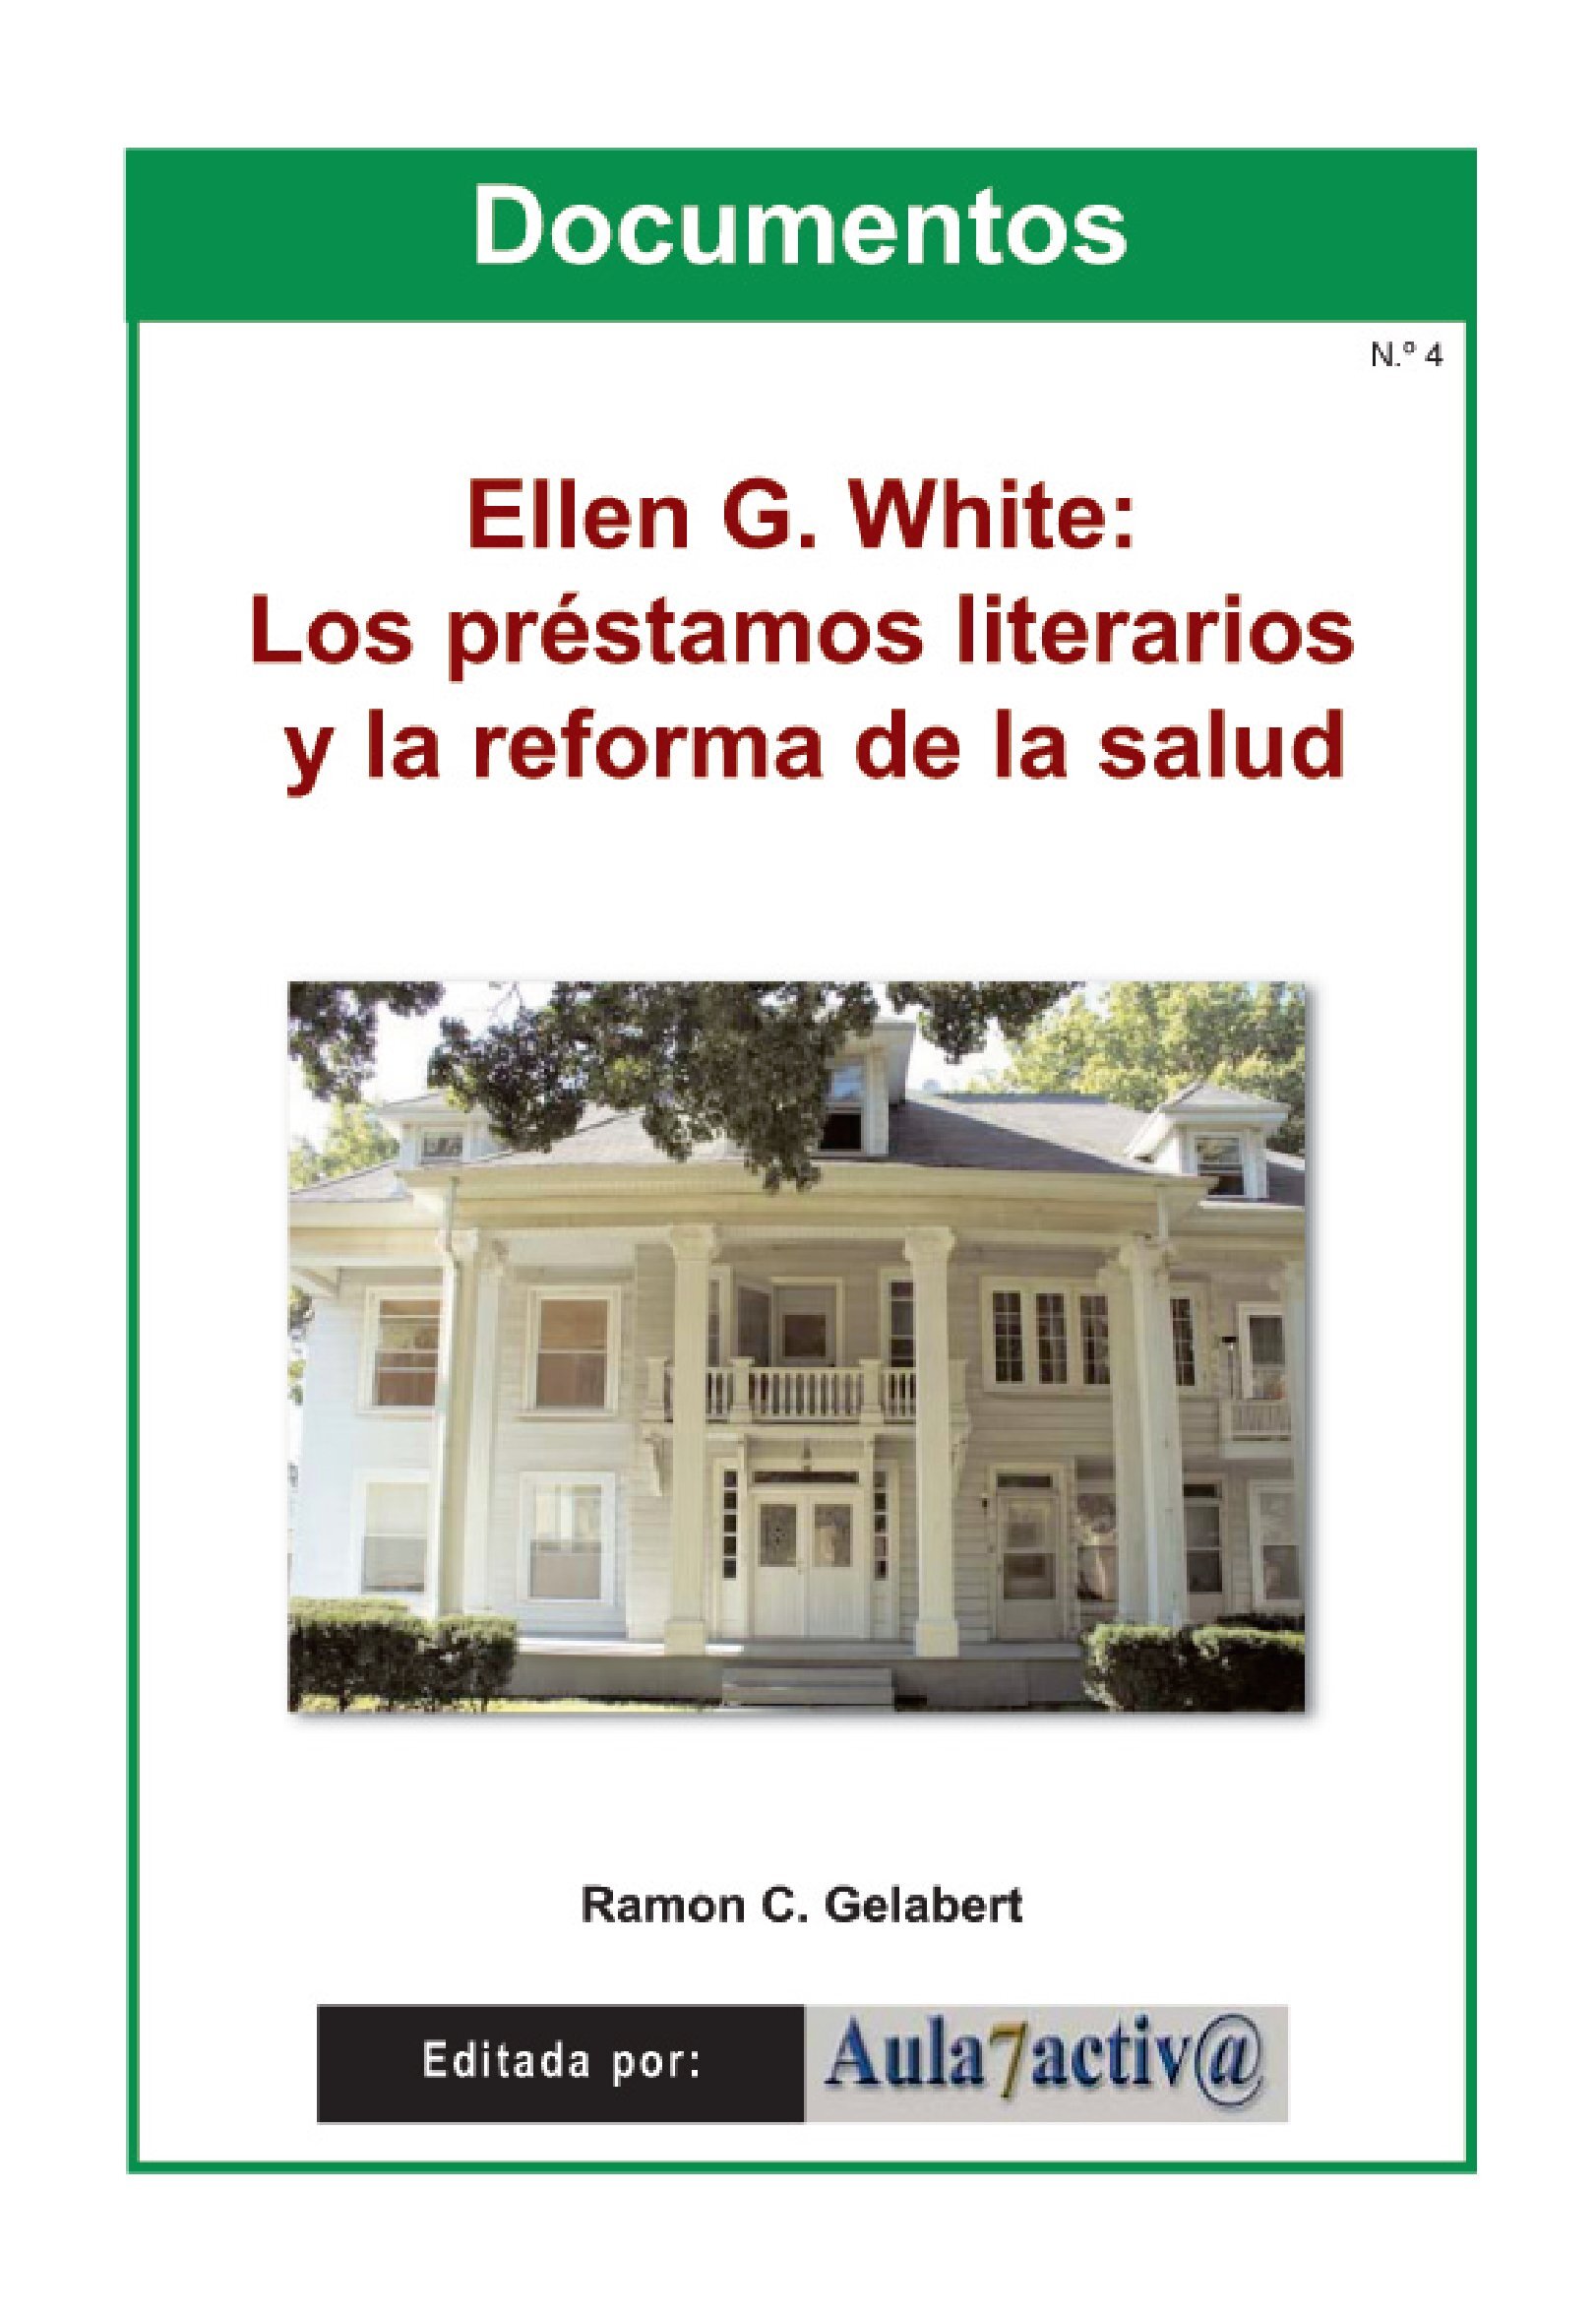 ELLEN G. WHITE: LOS PRÉSTAMOS LITERARIOS Y LA REFORMA DE LA SALUD